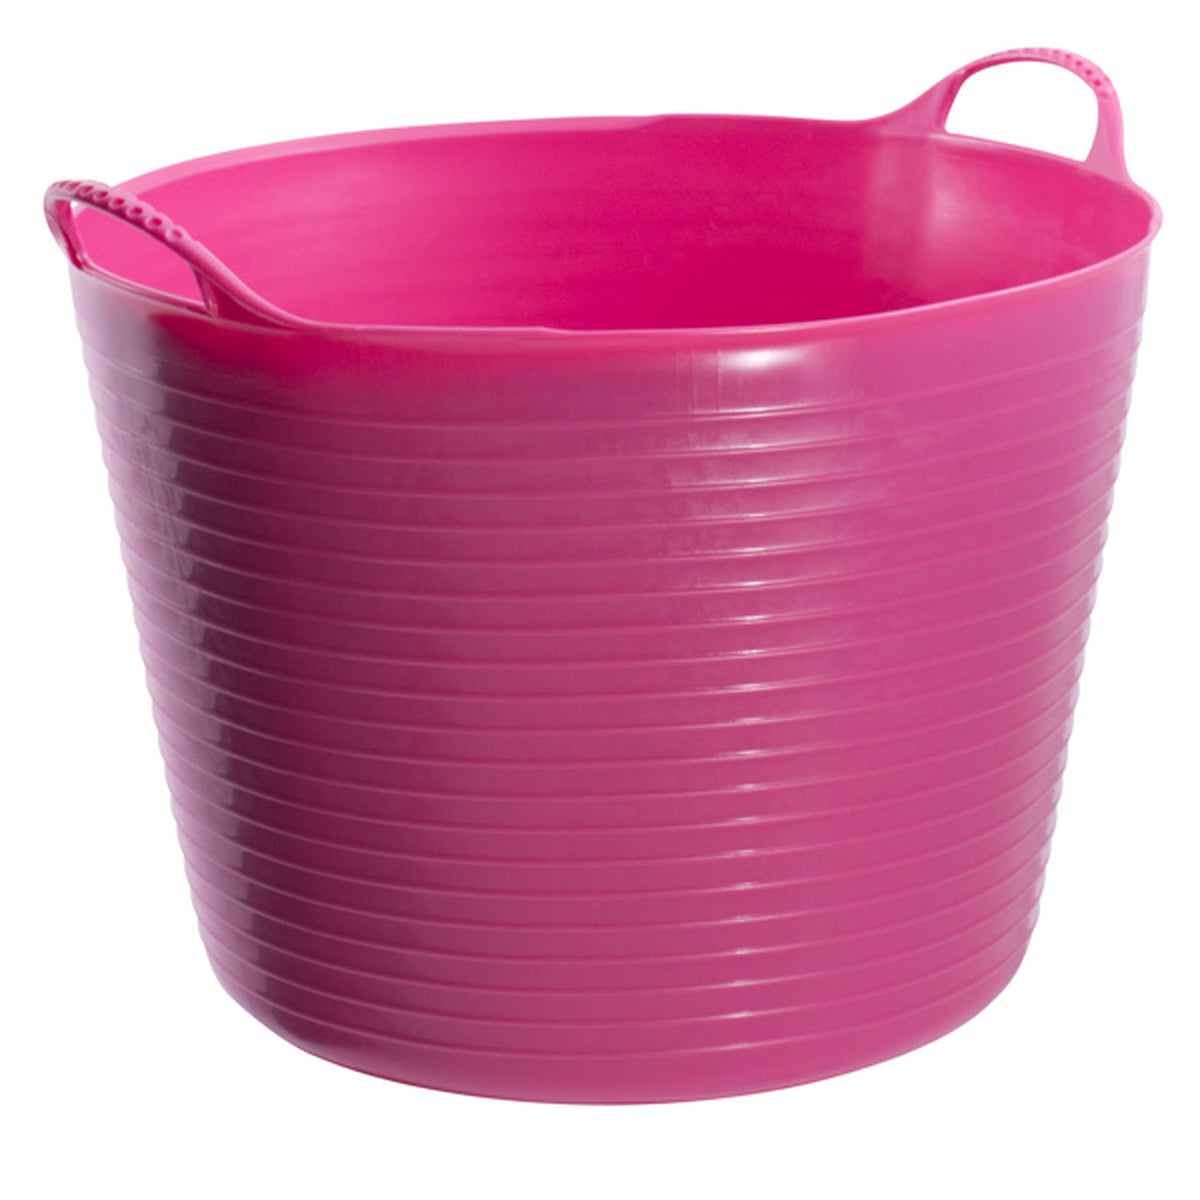 Pink tubs